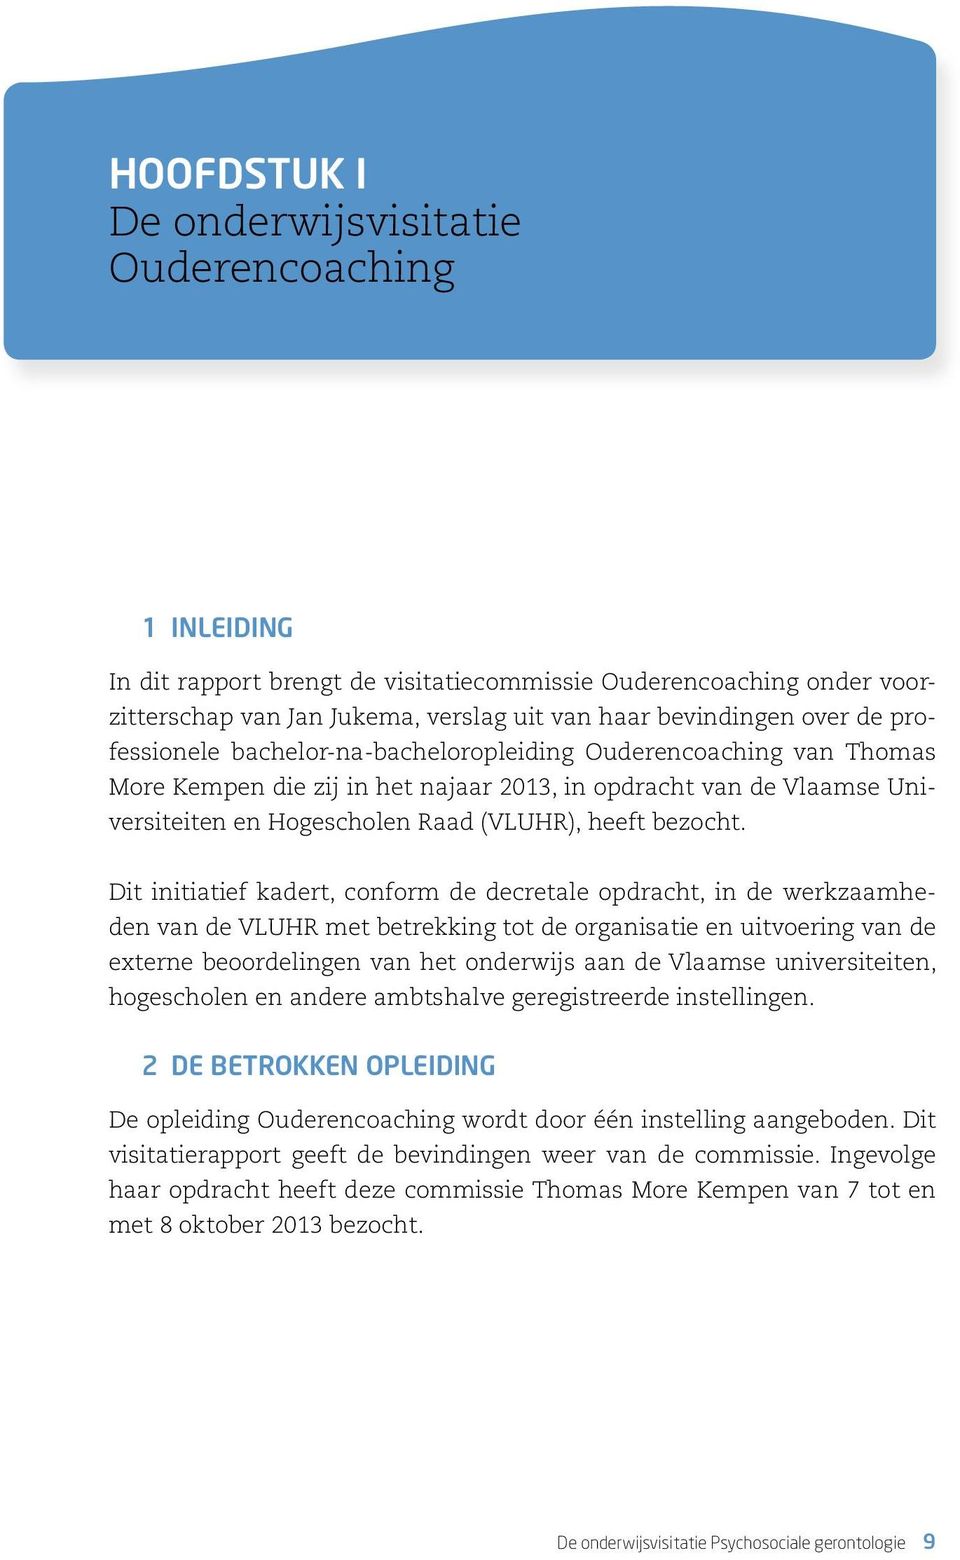 Dit initiatief kadert, conform de decretale opdracht, in de werkzaamheden van de VLUHR met betrekking tot de organisatie en uitvoering van de externe beoordelingen van het onderwijs aan de Vlaamse